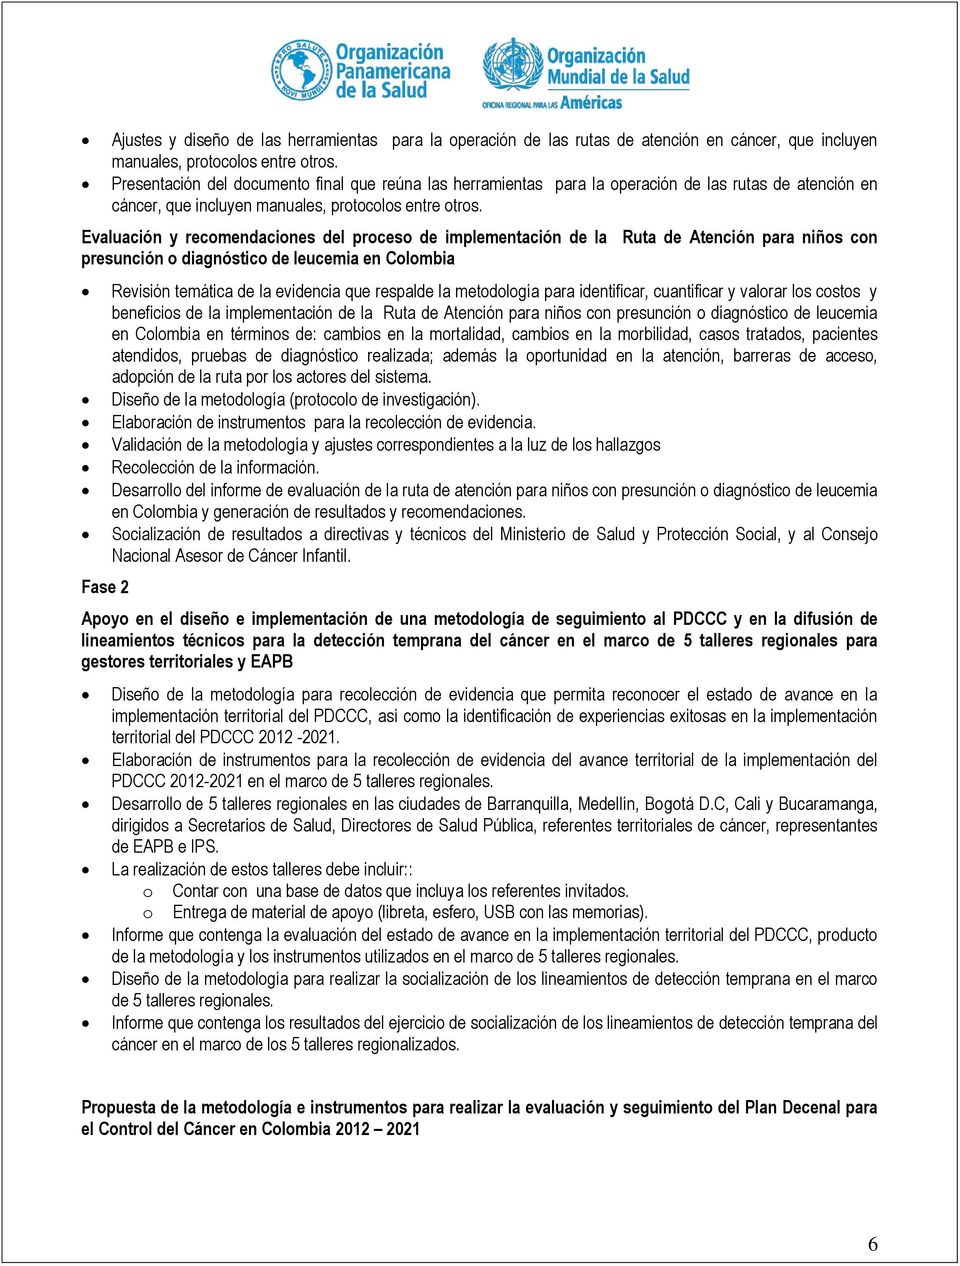 Evaluación y recomendaciones proceso de implementación presunción o diagnóstico de leucemia en Colombia Ruta de Atención para niños con Revisión temática evidencia que respal metodología para